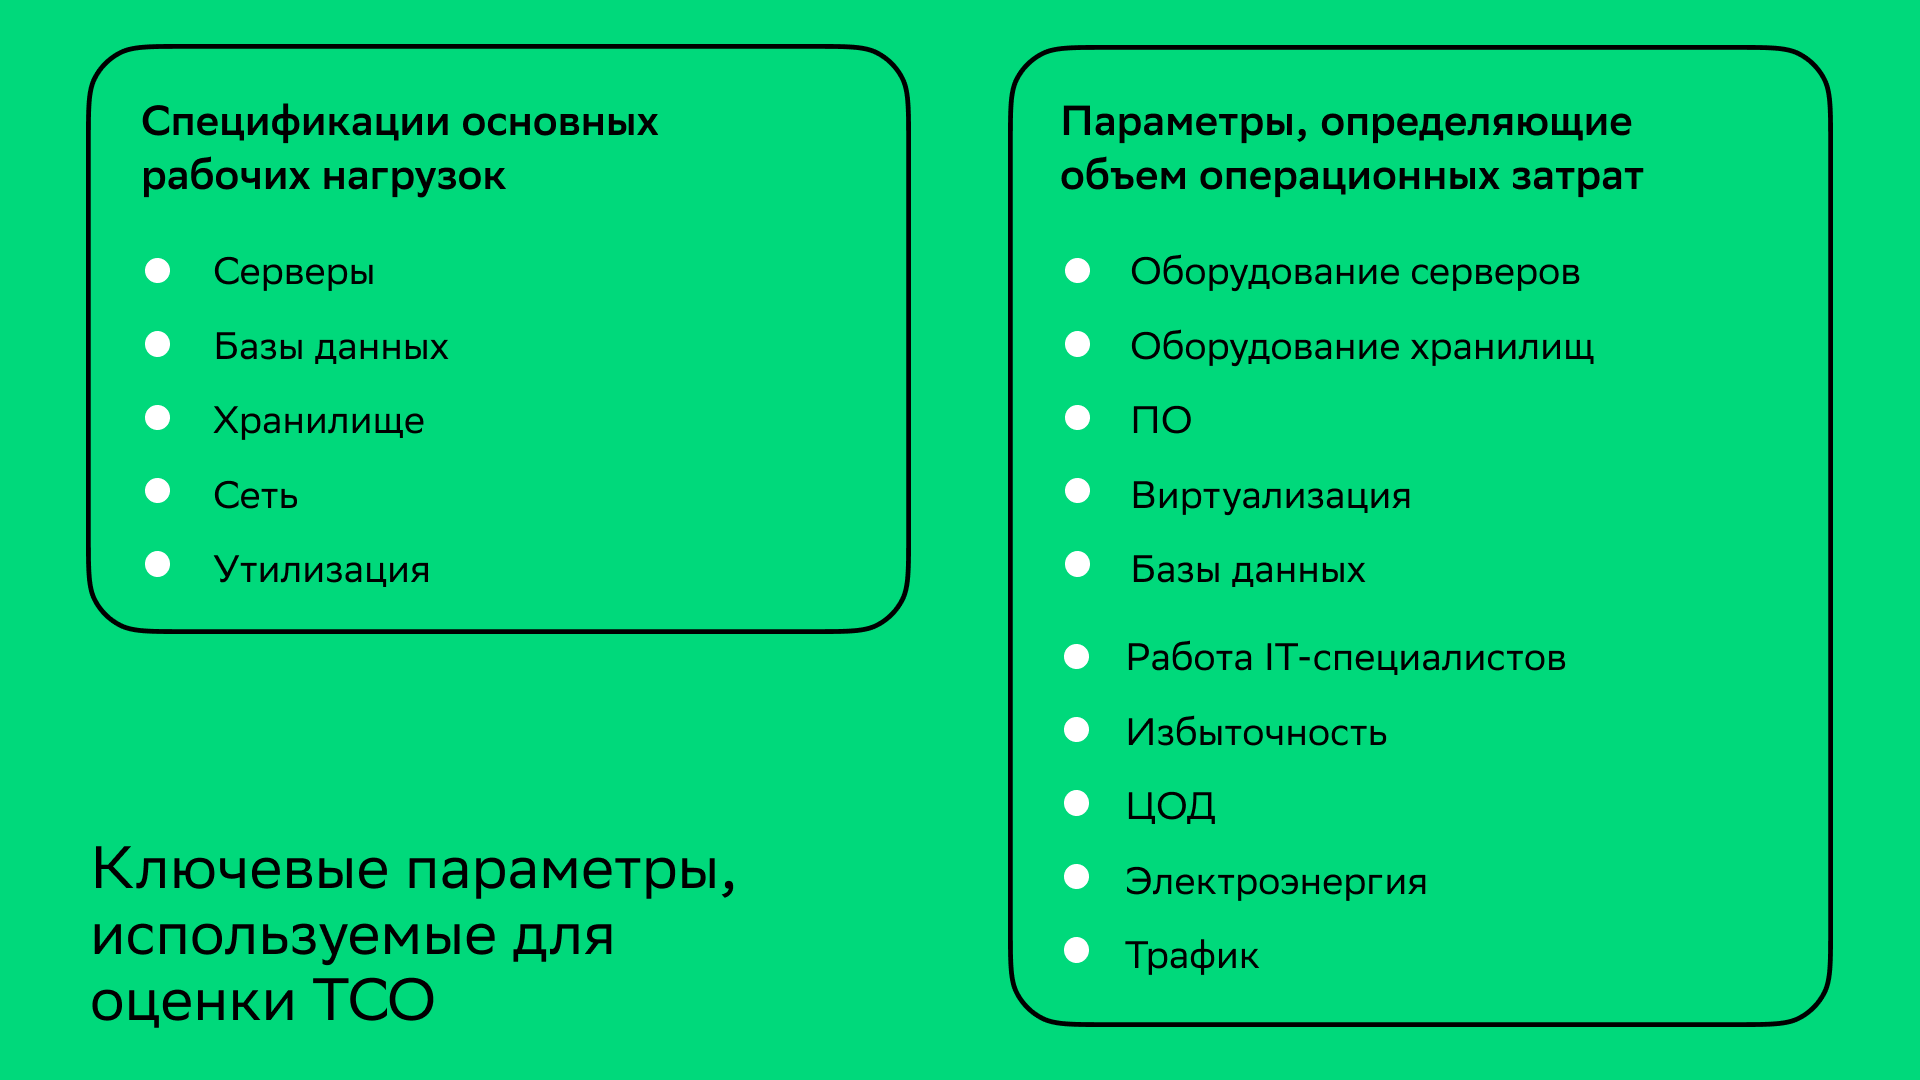 Параметры, влияющие на ТСО, учитывающиеся в методологии Cloud.ru